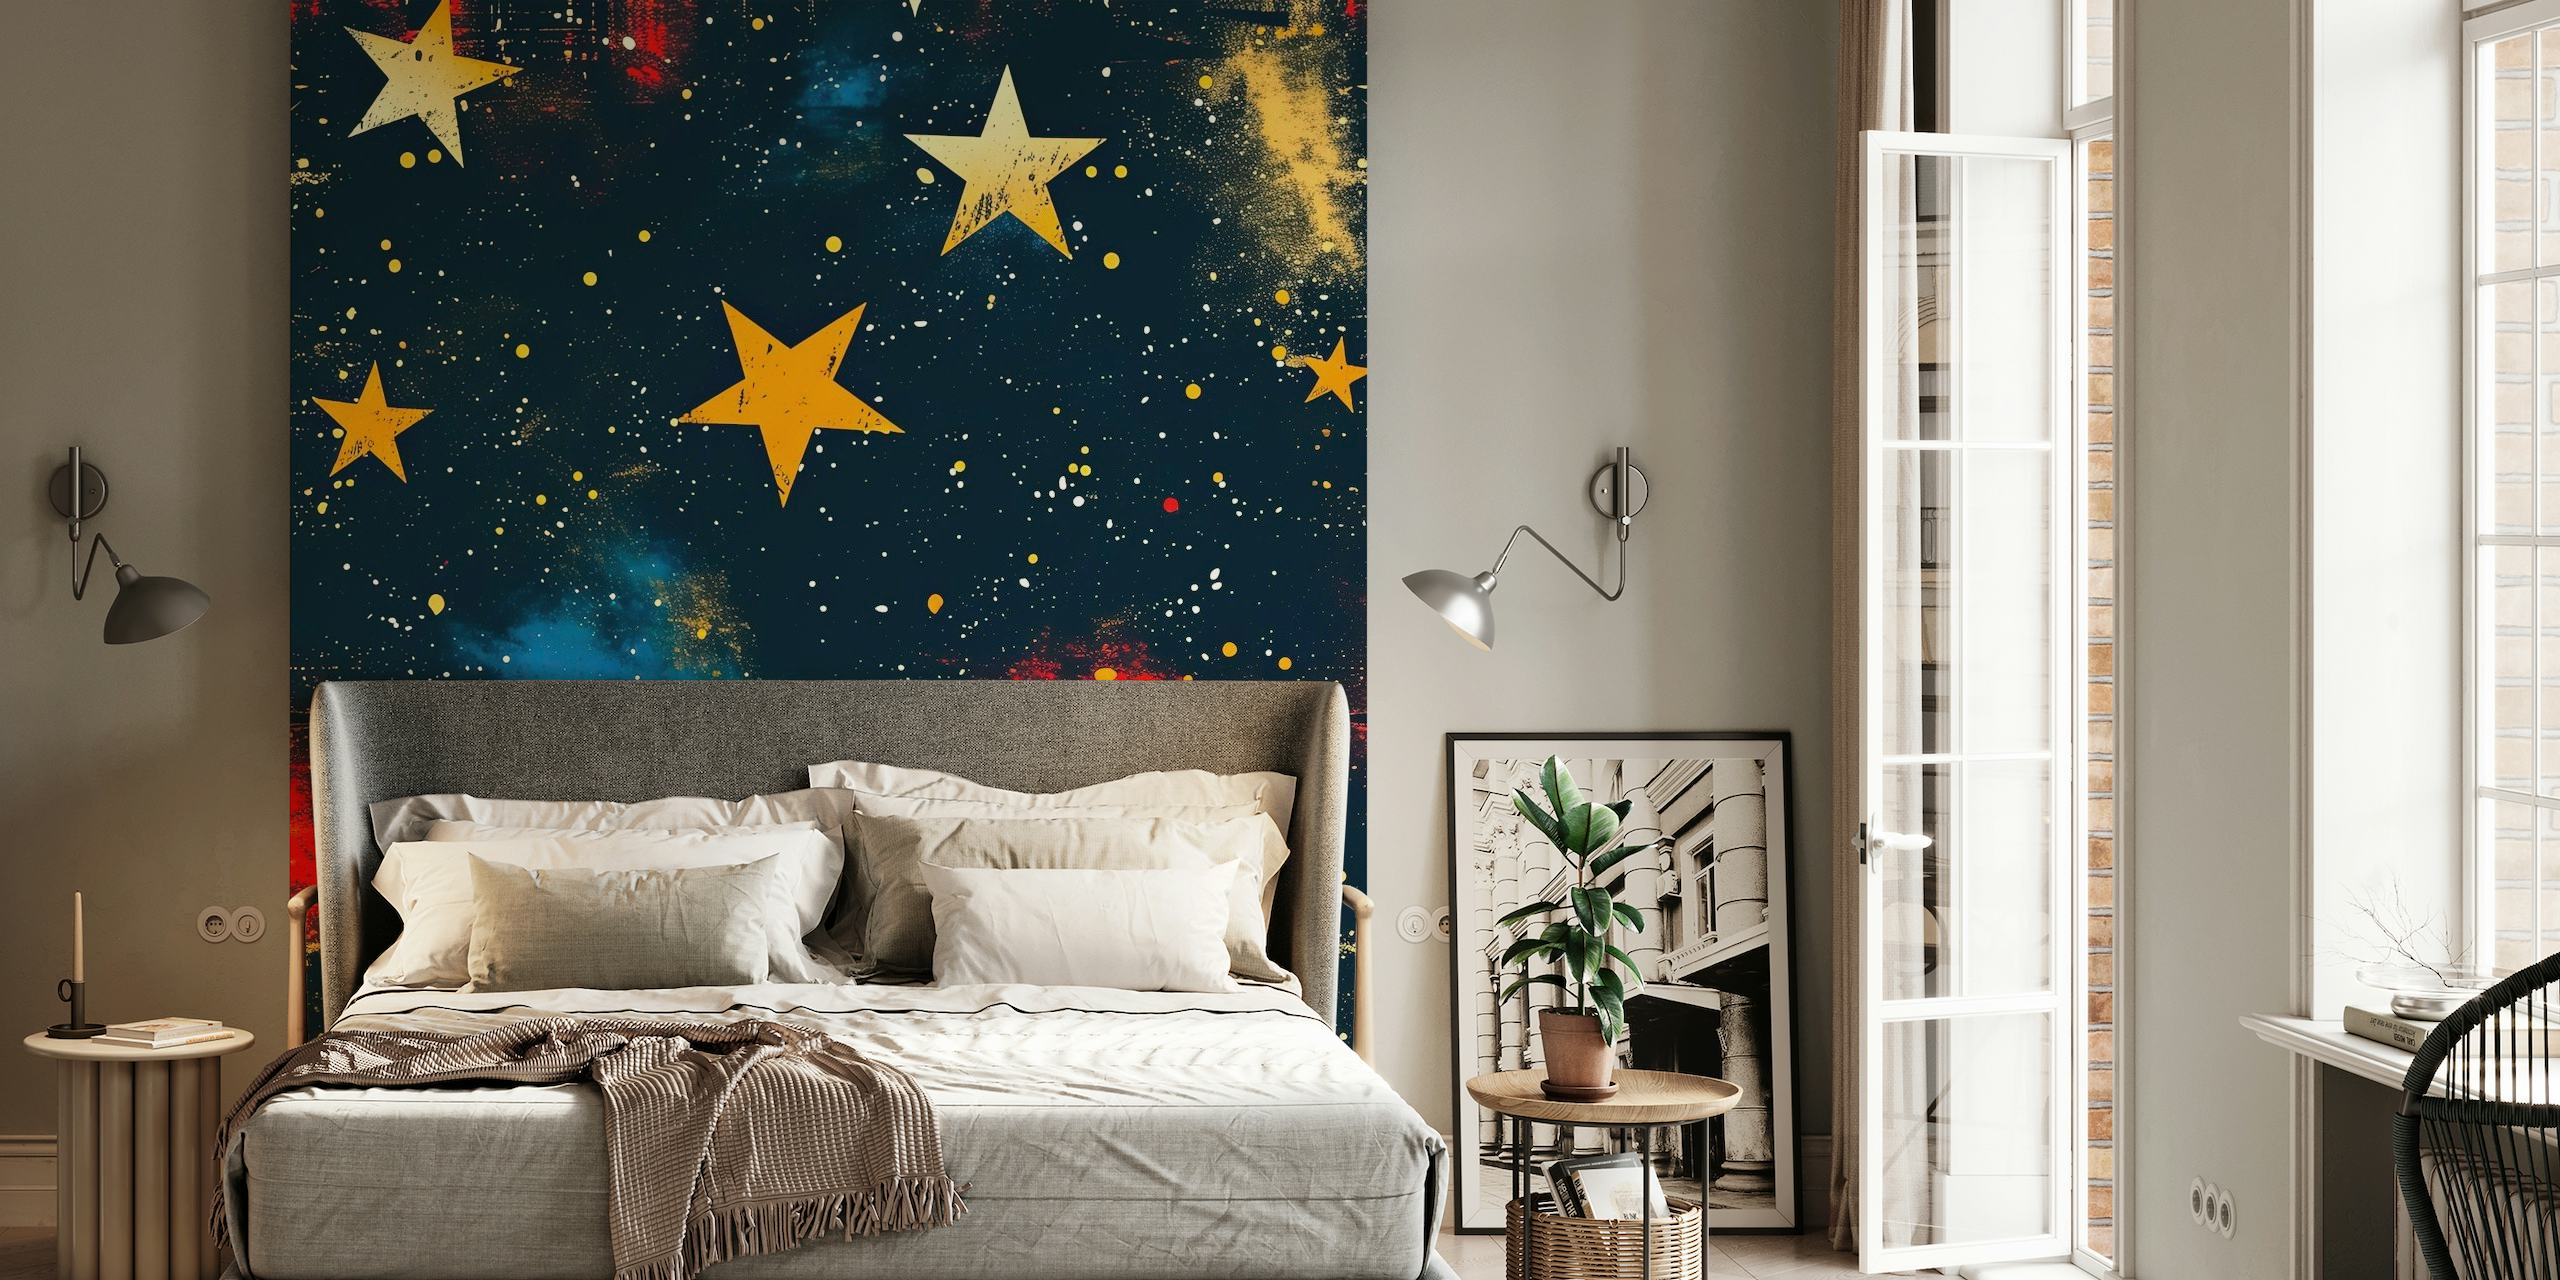 Fototapete „The Stars Above“ mit leuchtenden Sternen und Nebeln auf dunklem Hintergrund